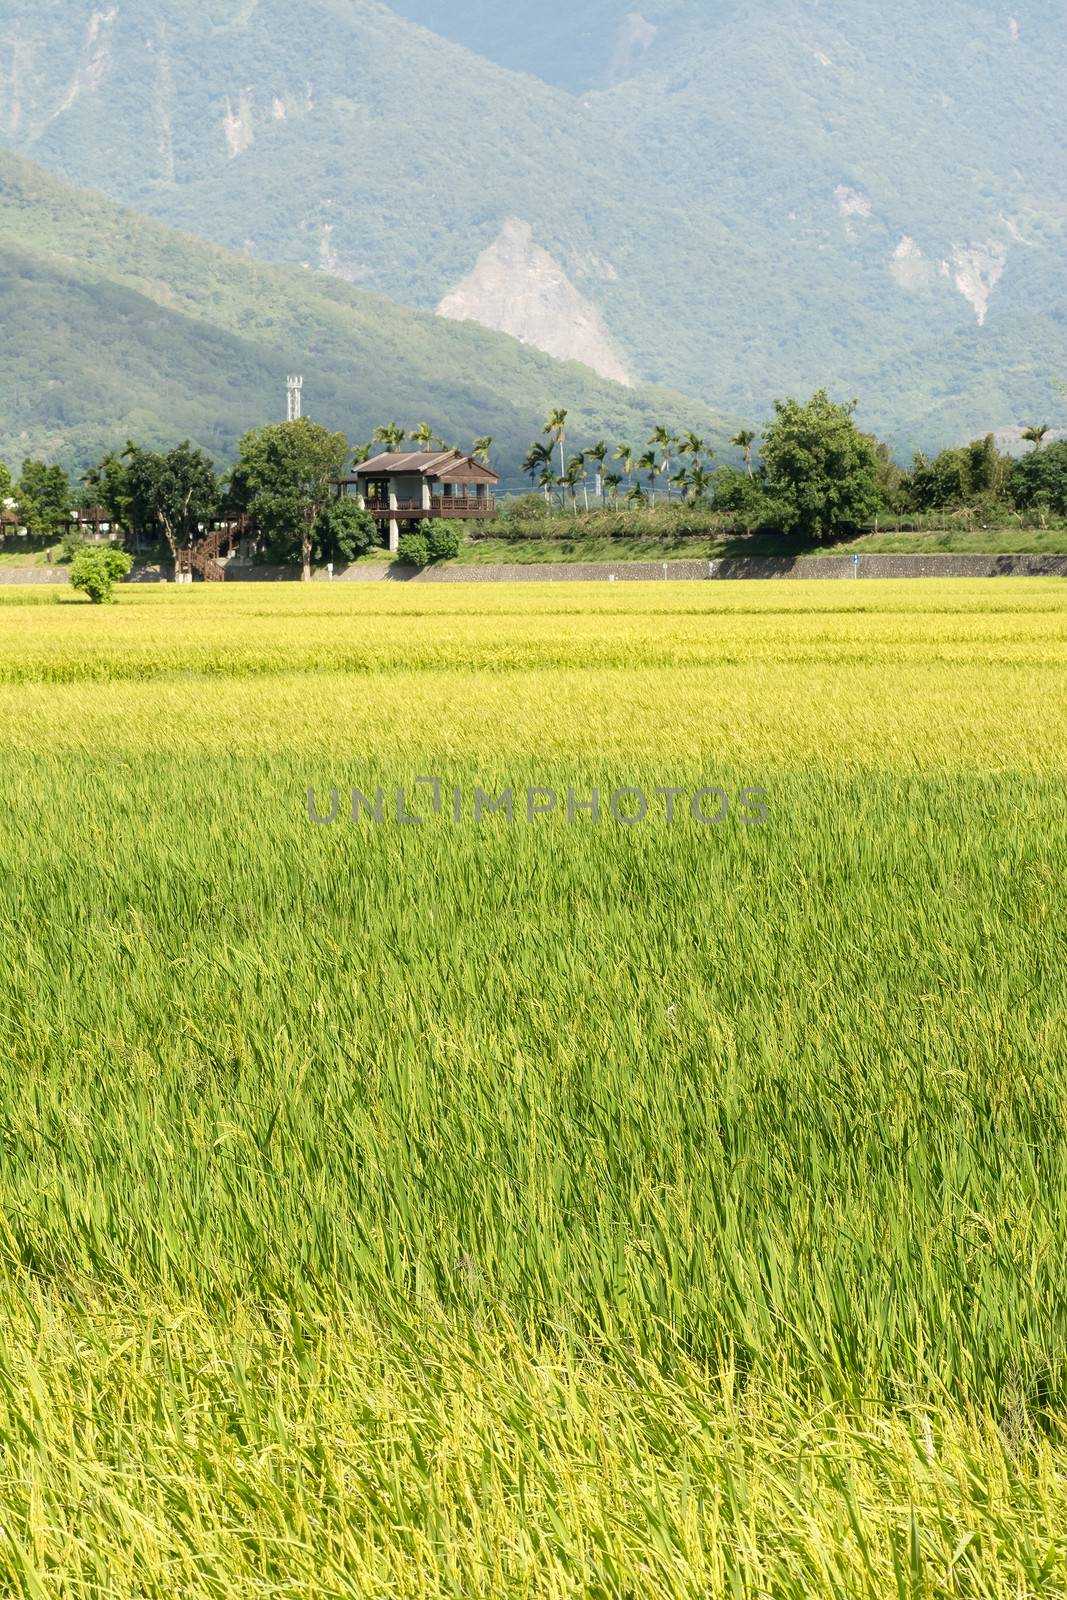 Idyllic rural scenery with yellow paddy field in Taiwan, Asia.